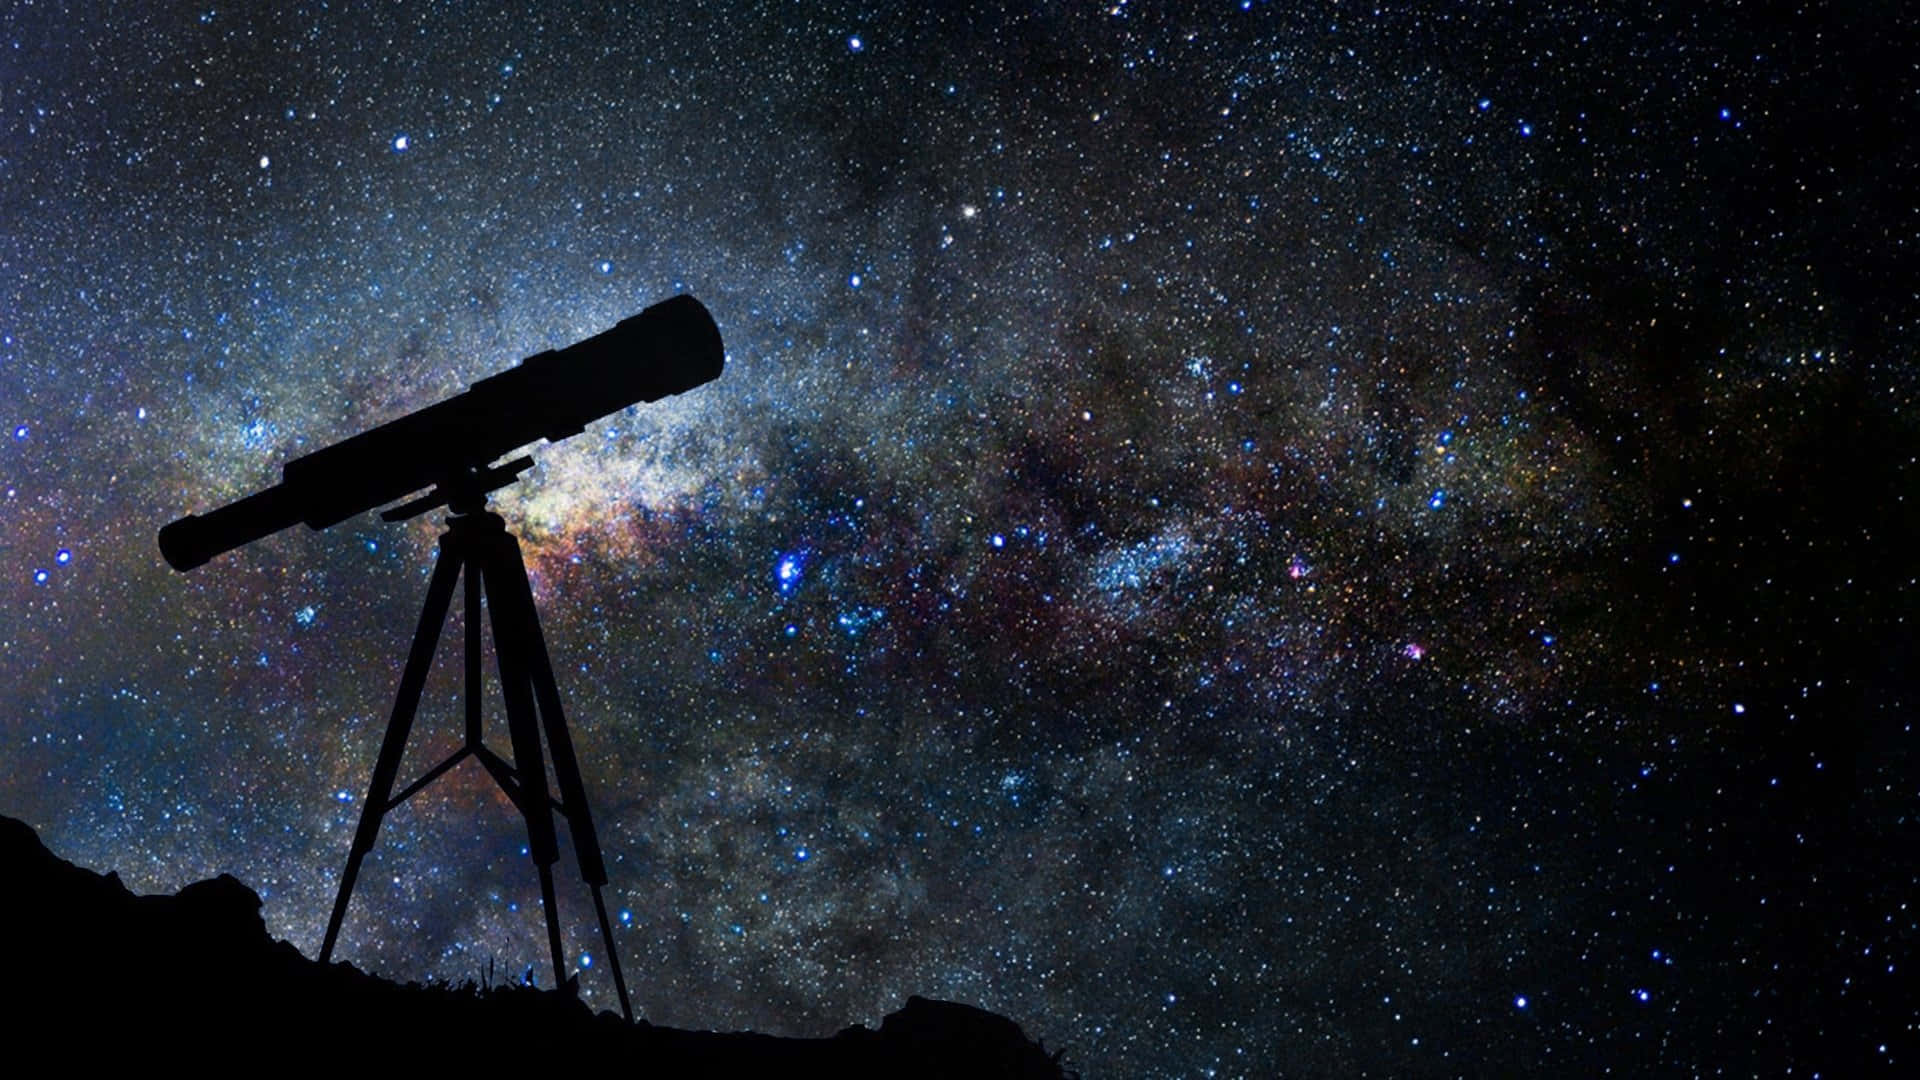 Umastrônomo Observa O Cosmos Com Um Telescópio.